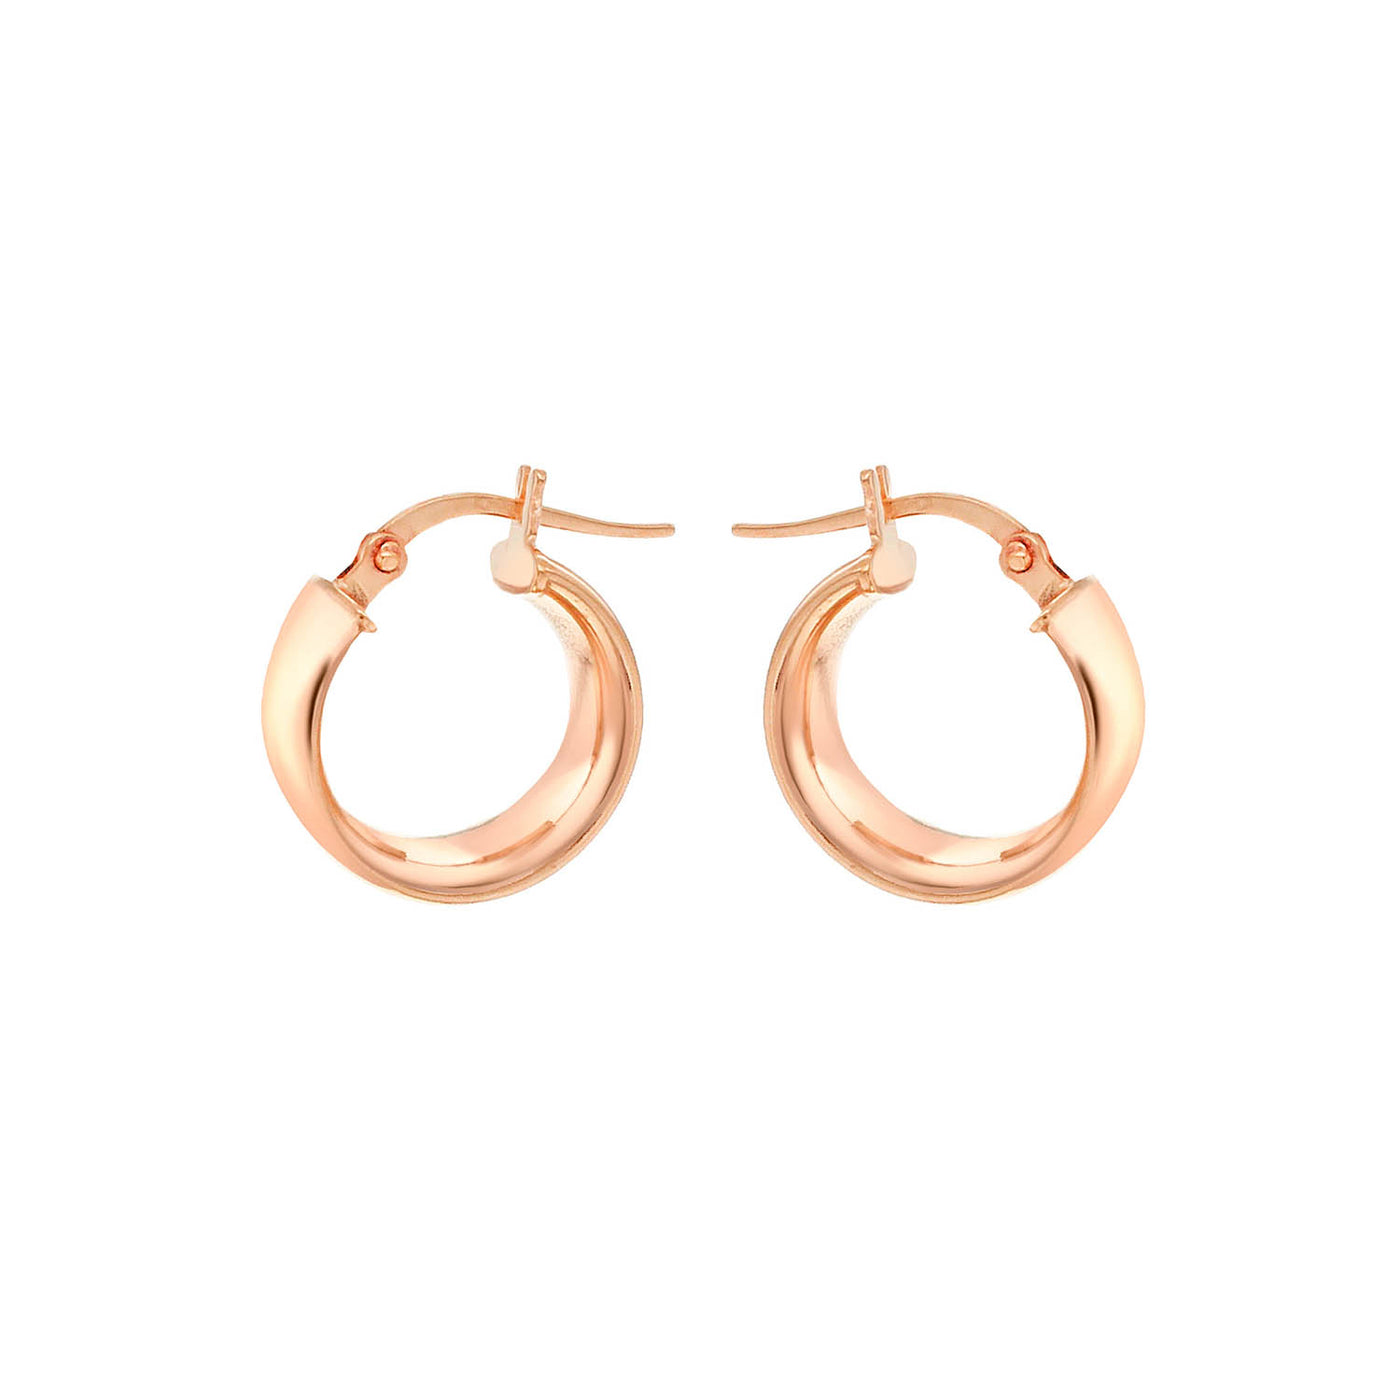 9ct Rose Gold Hoop Earrings.